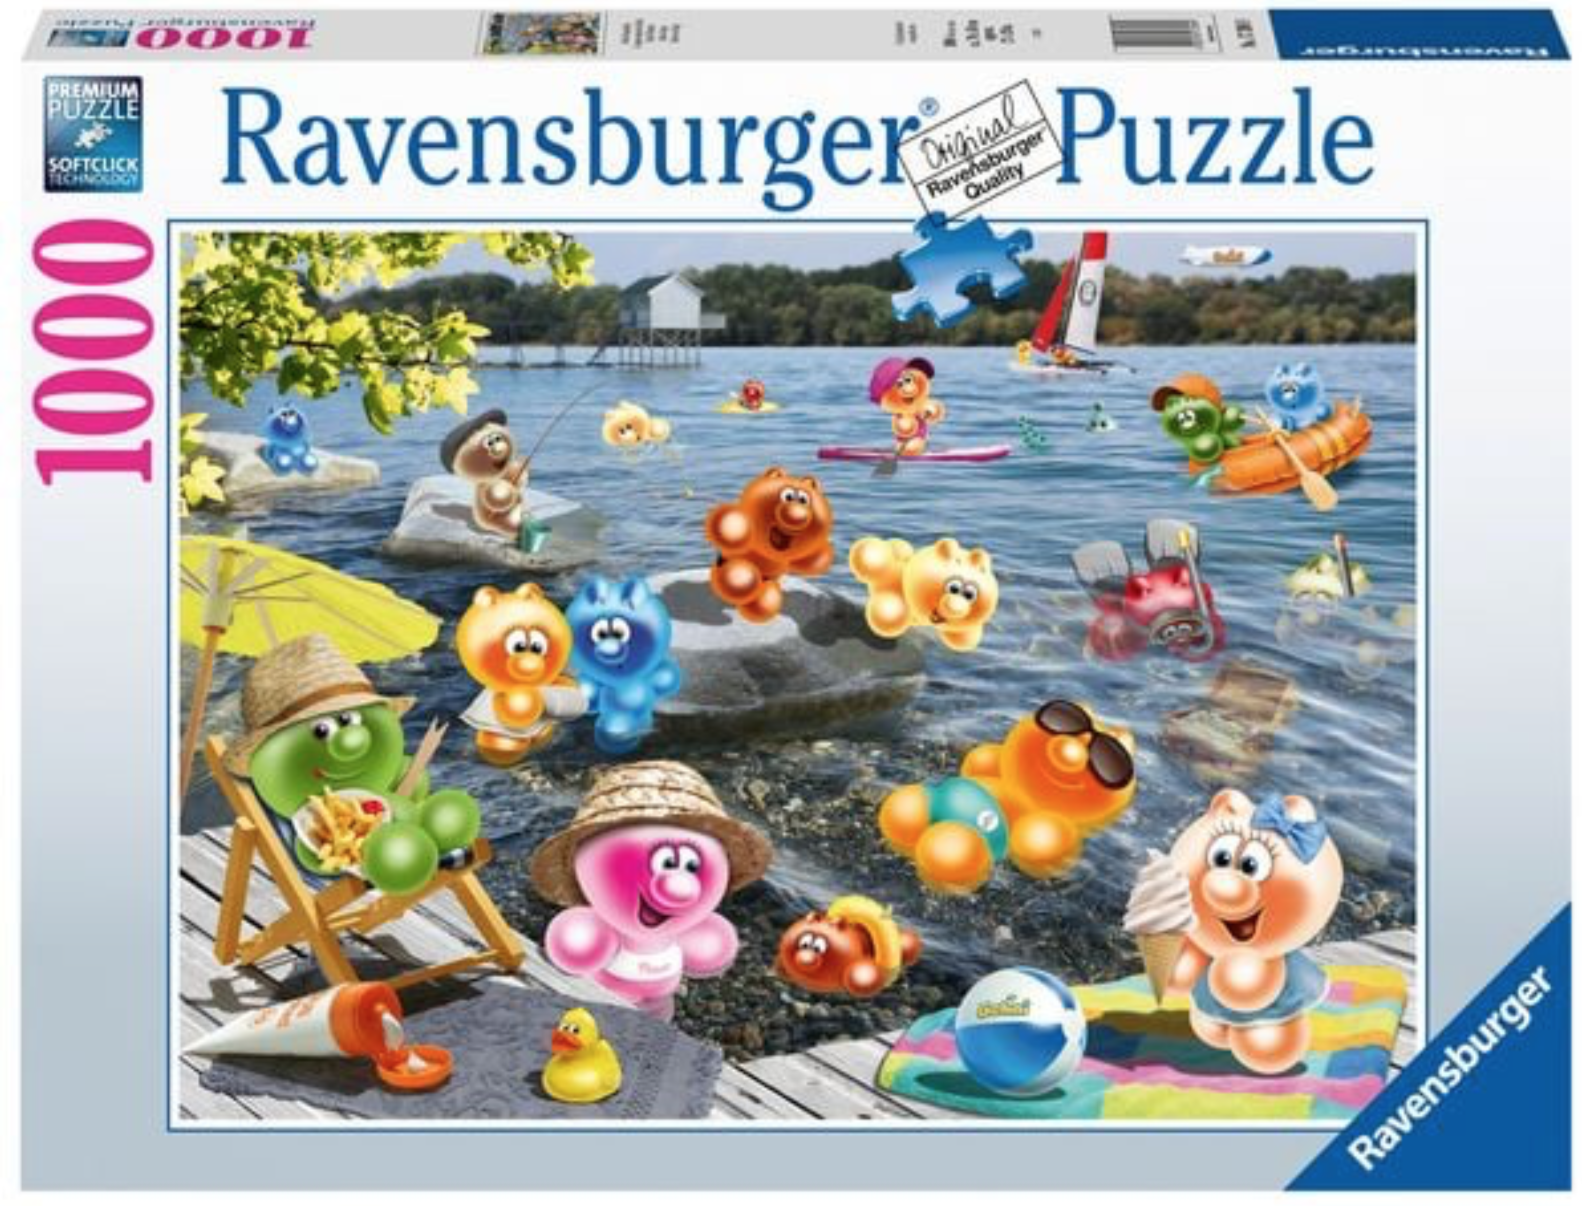 Acheter des Ravensburger Puzzels bon marché? Vaste choix!